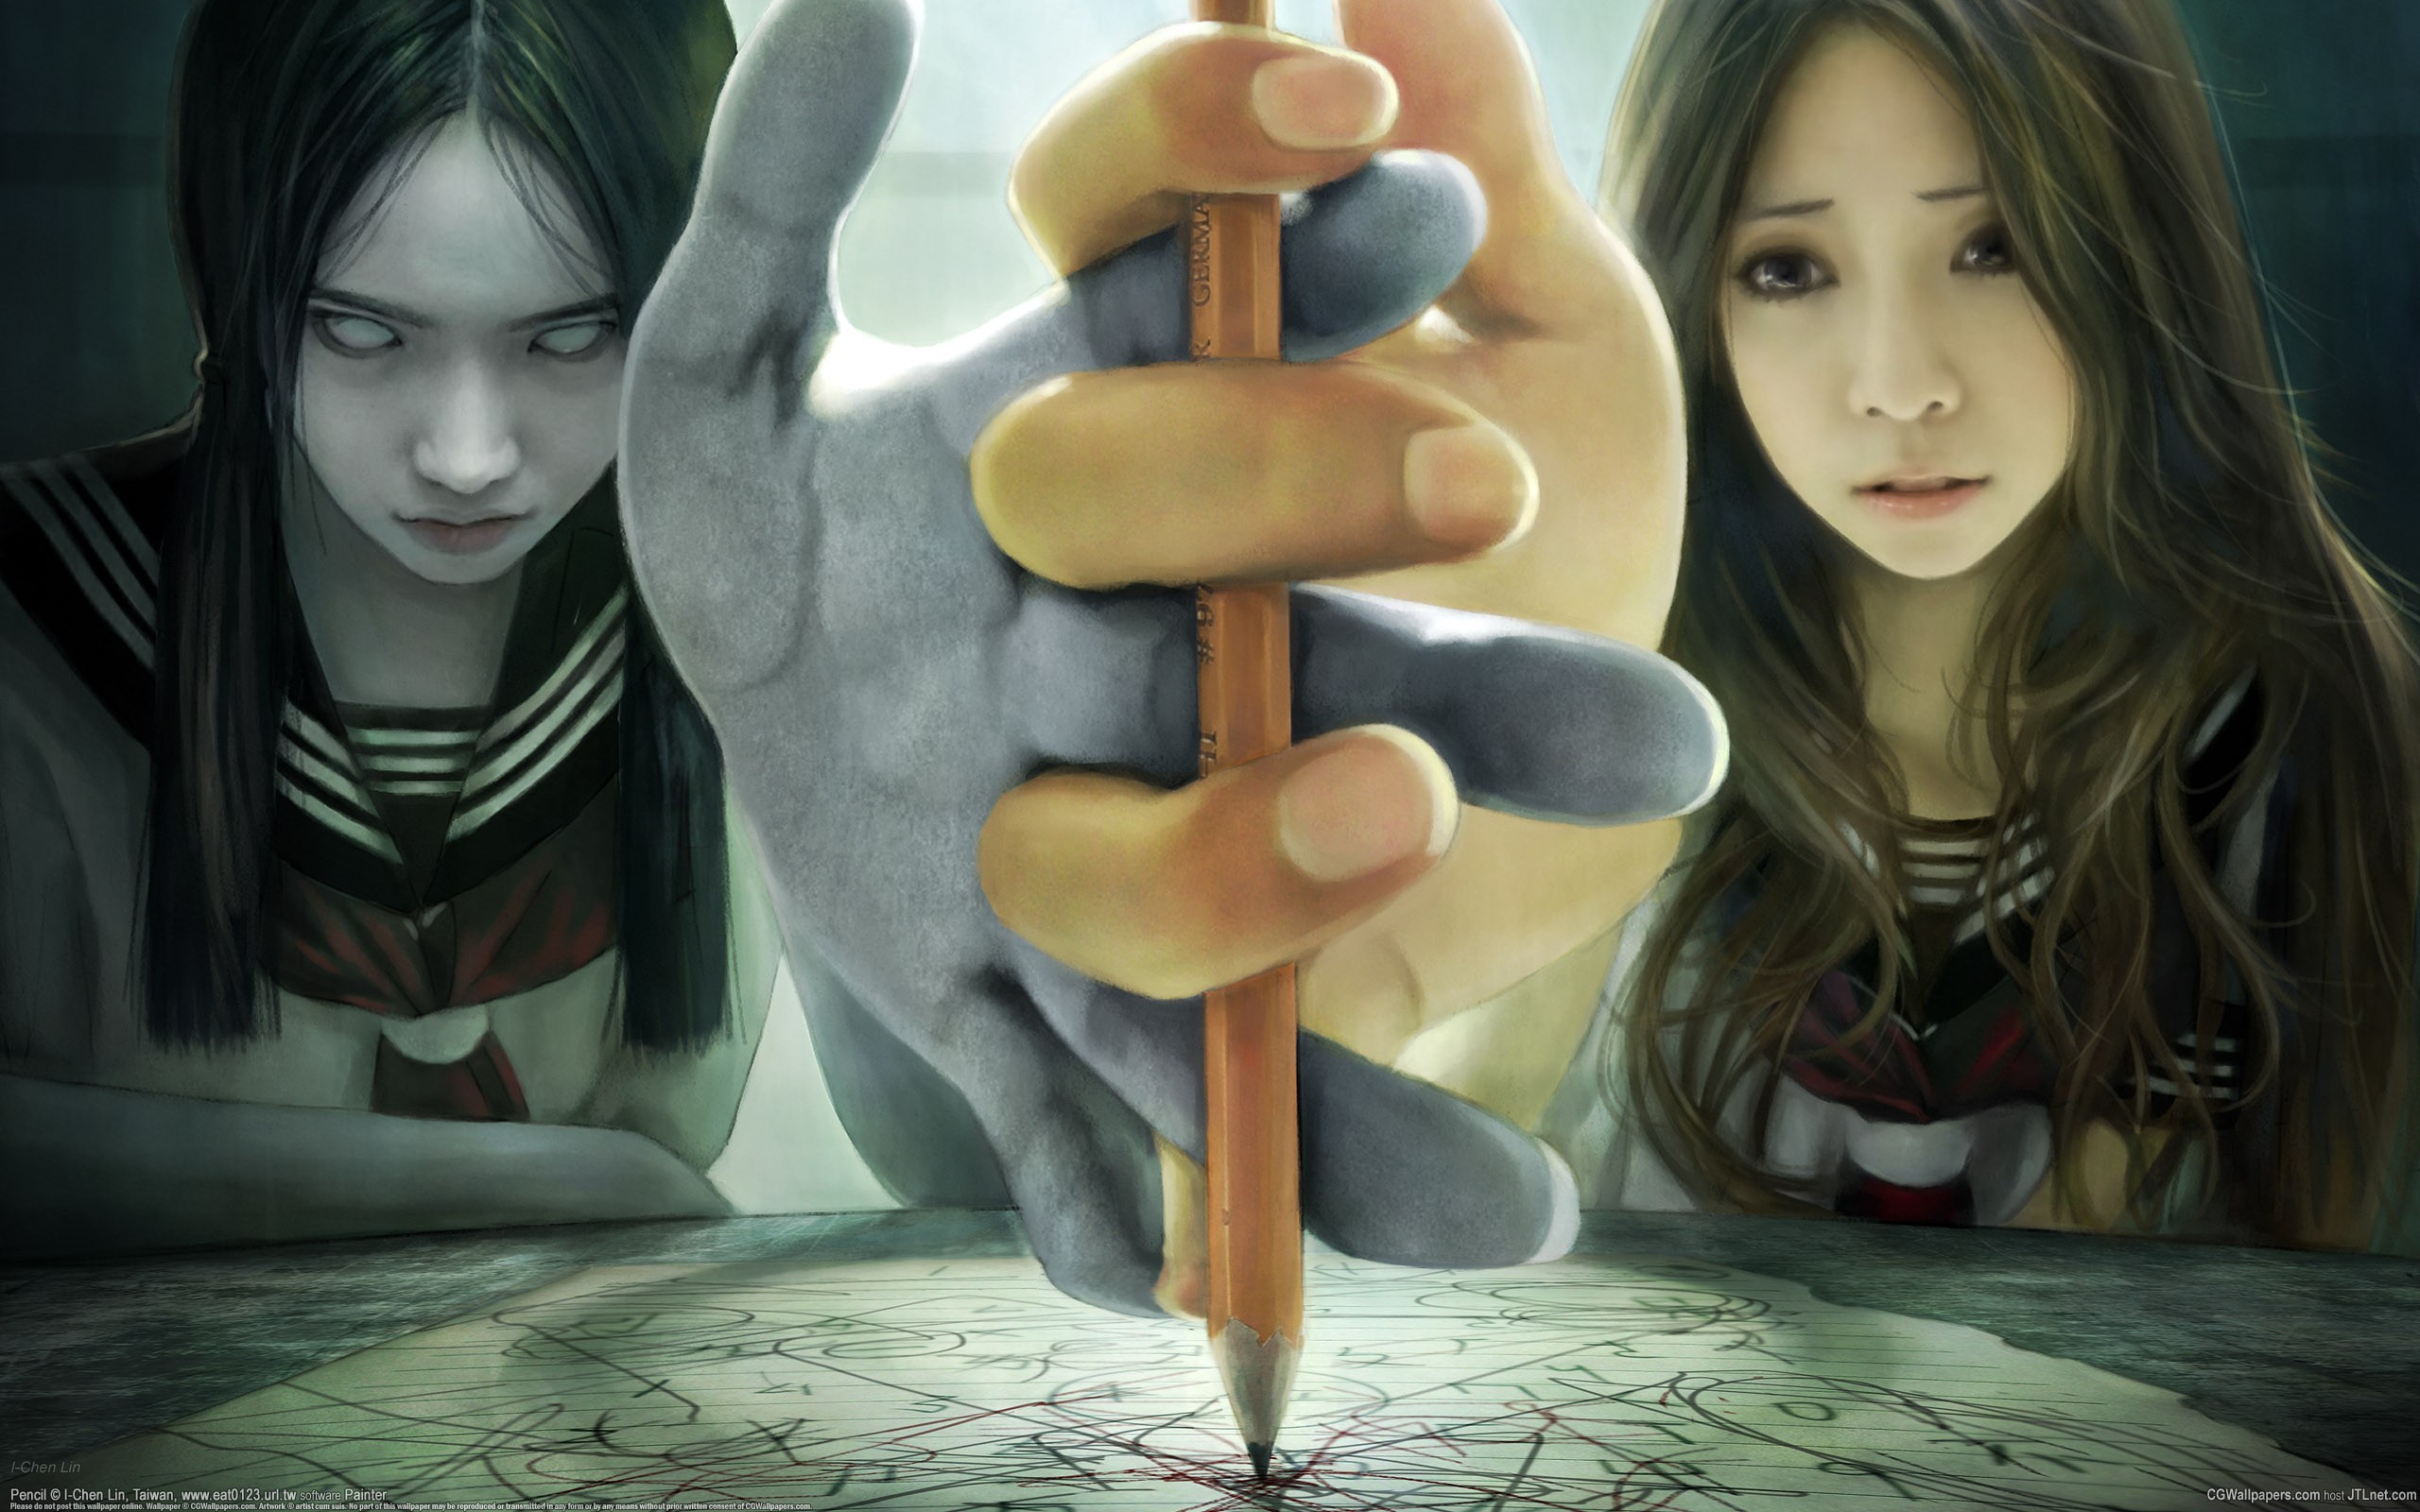 General 2560x1600 ghost artwork horror Asian women pencils hands brunette anime anime girls